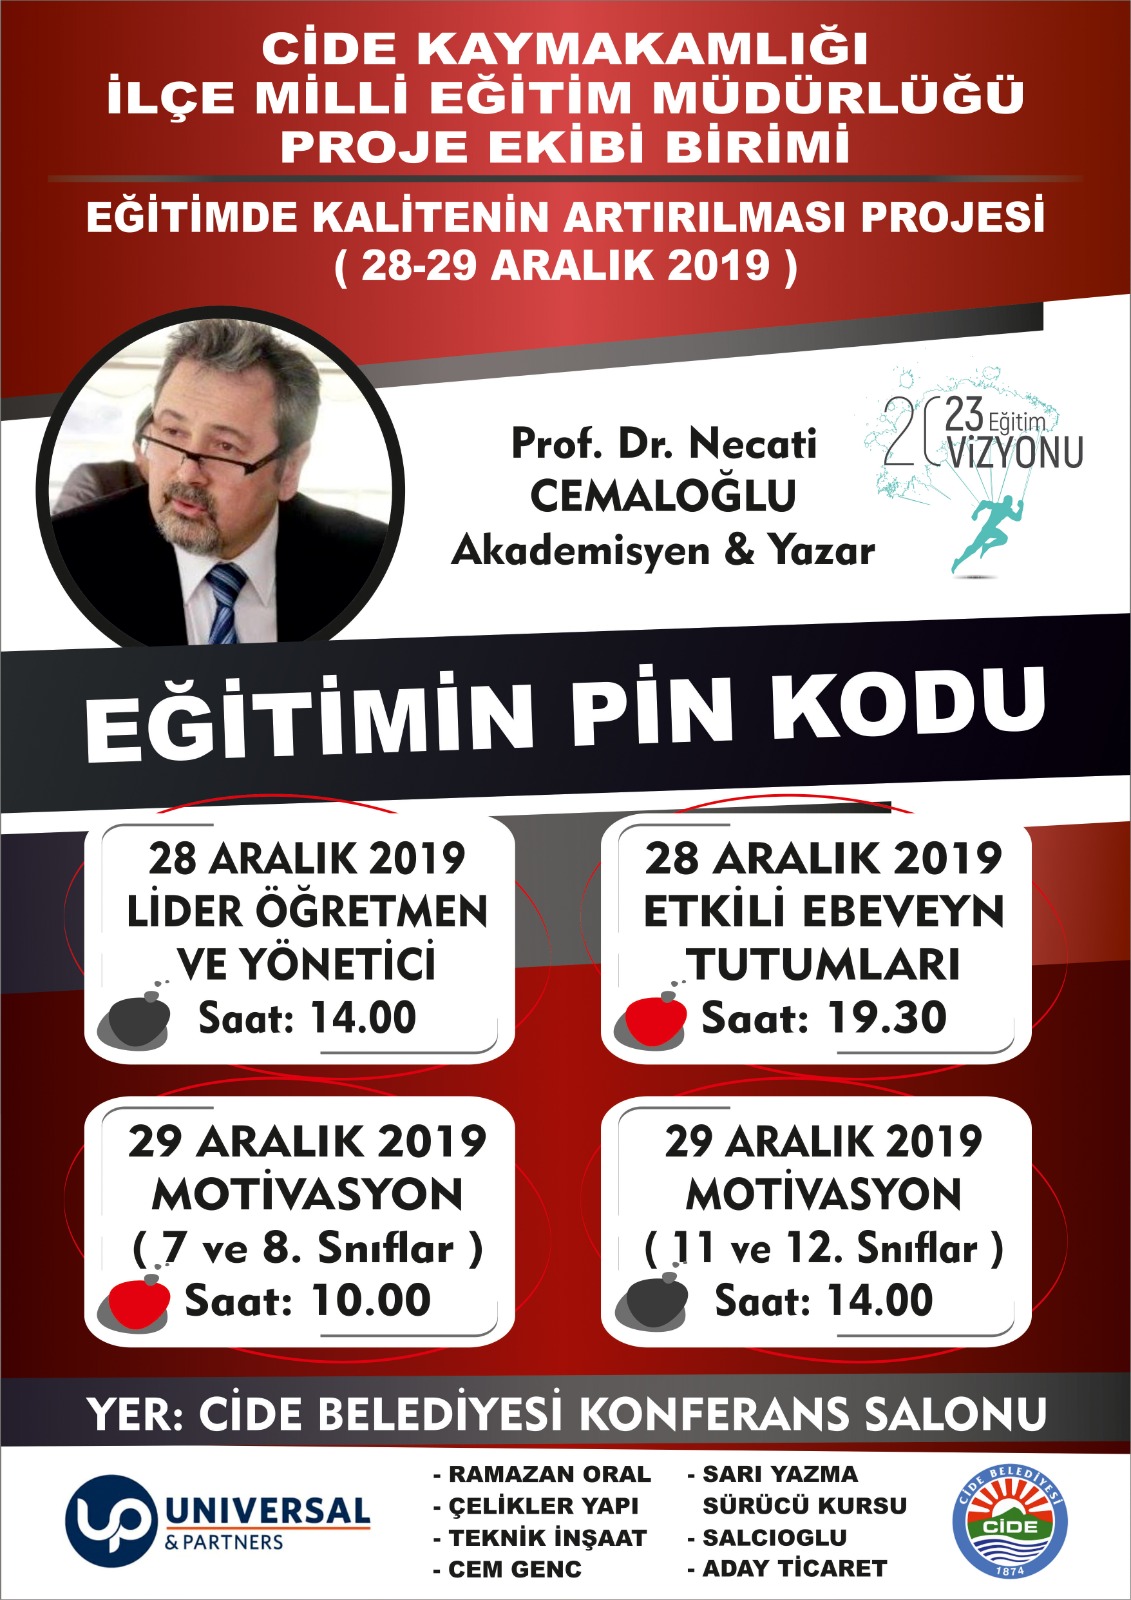 Prof. Dr. Necati Cemaloğlu Cide’de konferans verecek